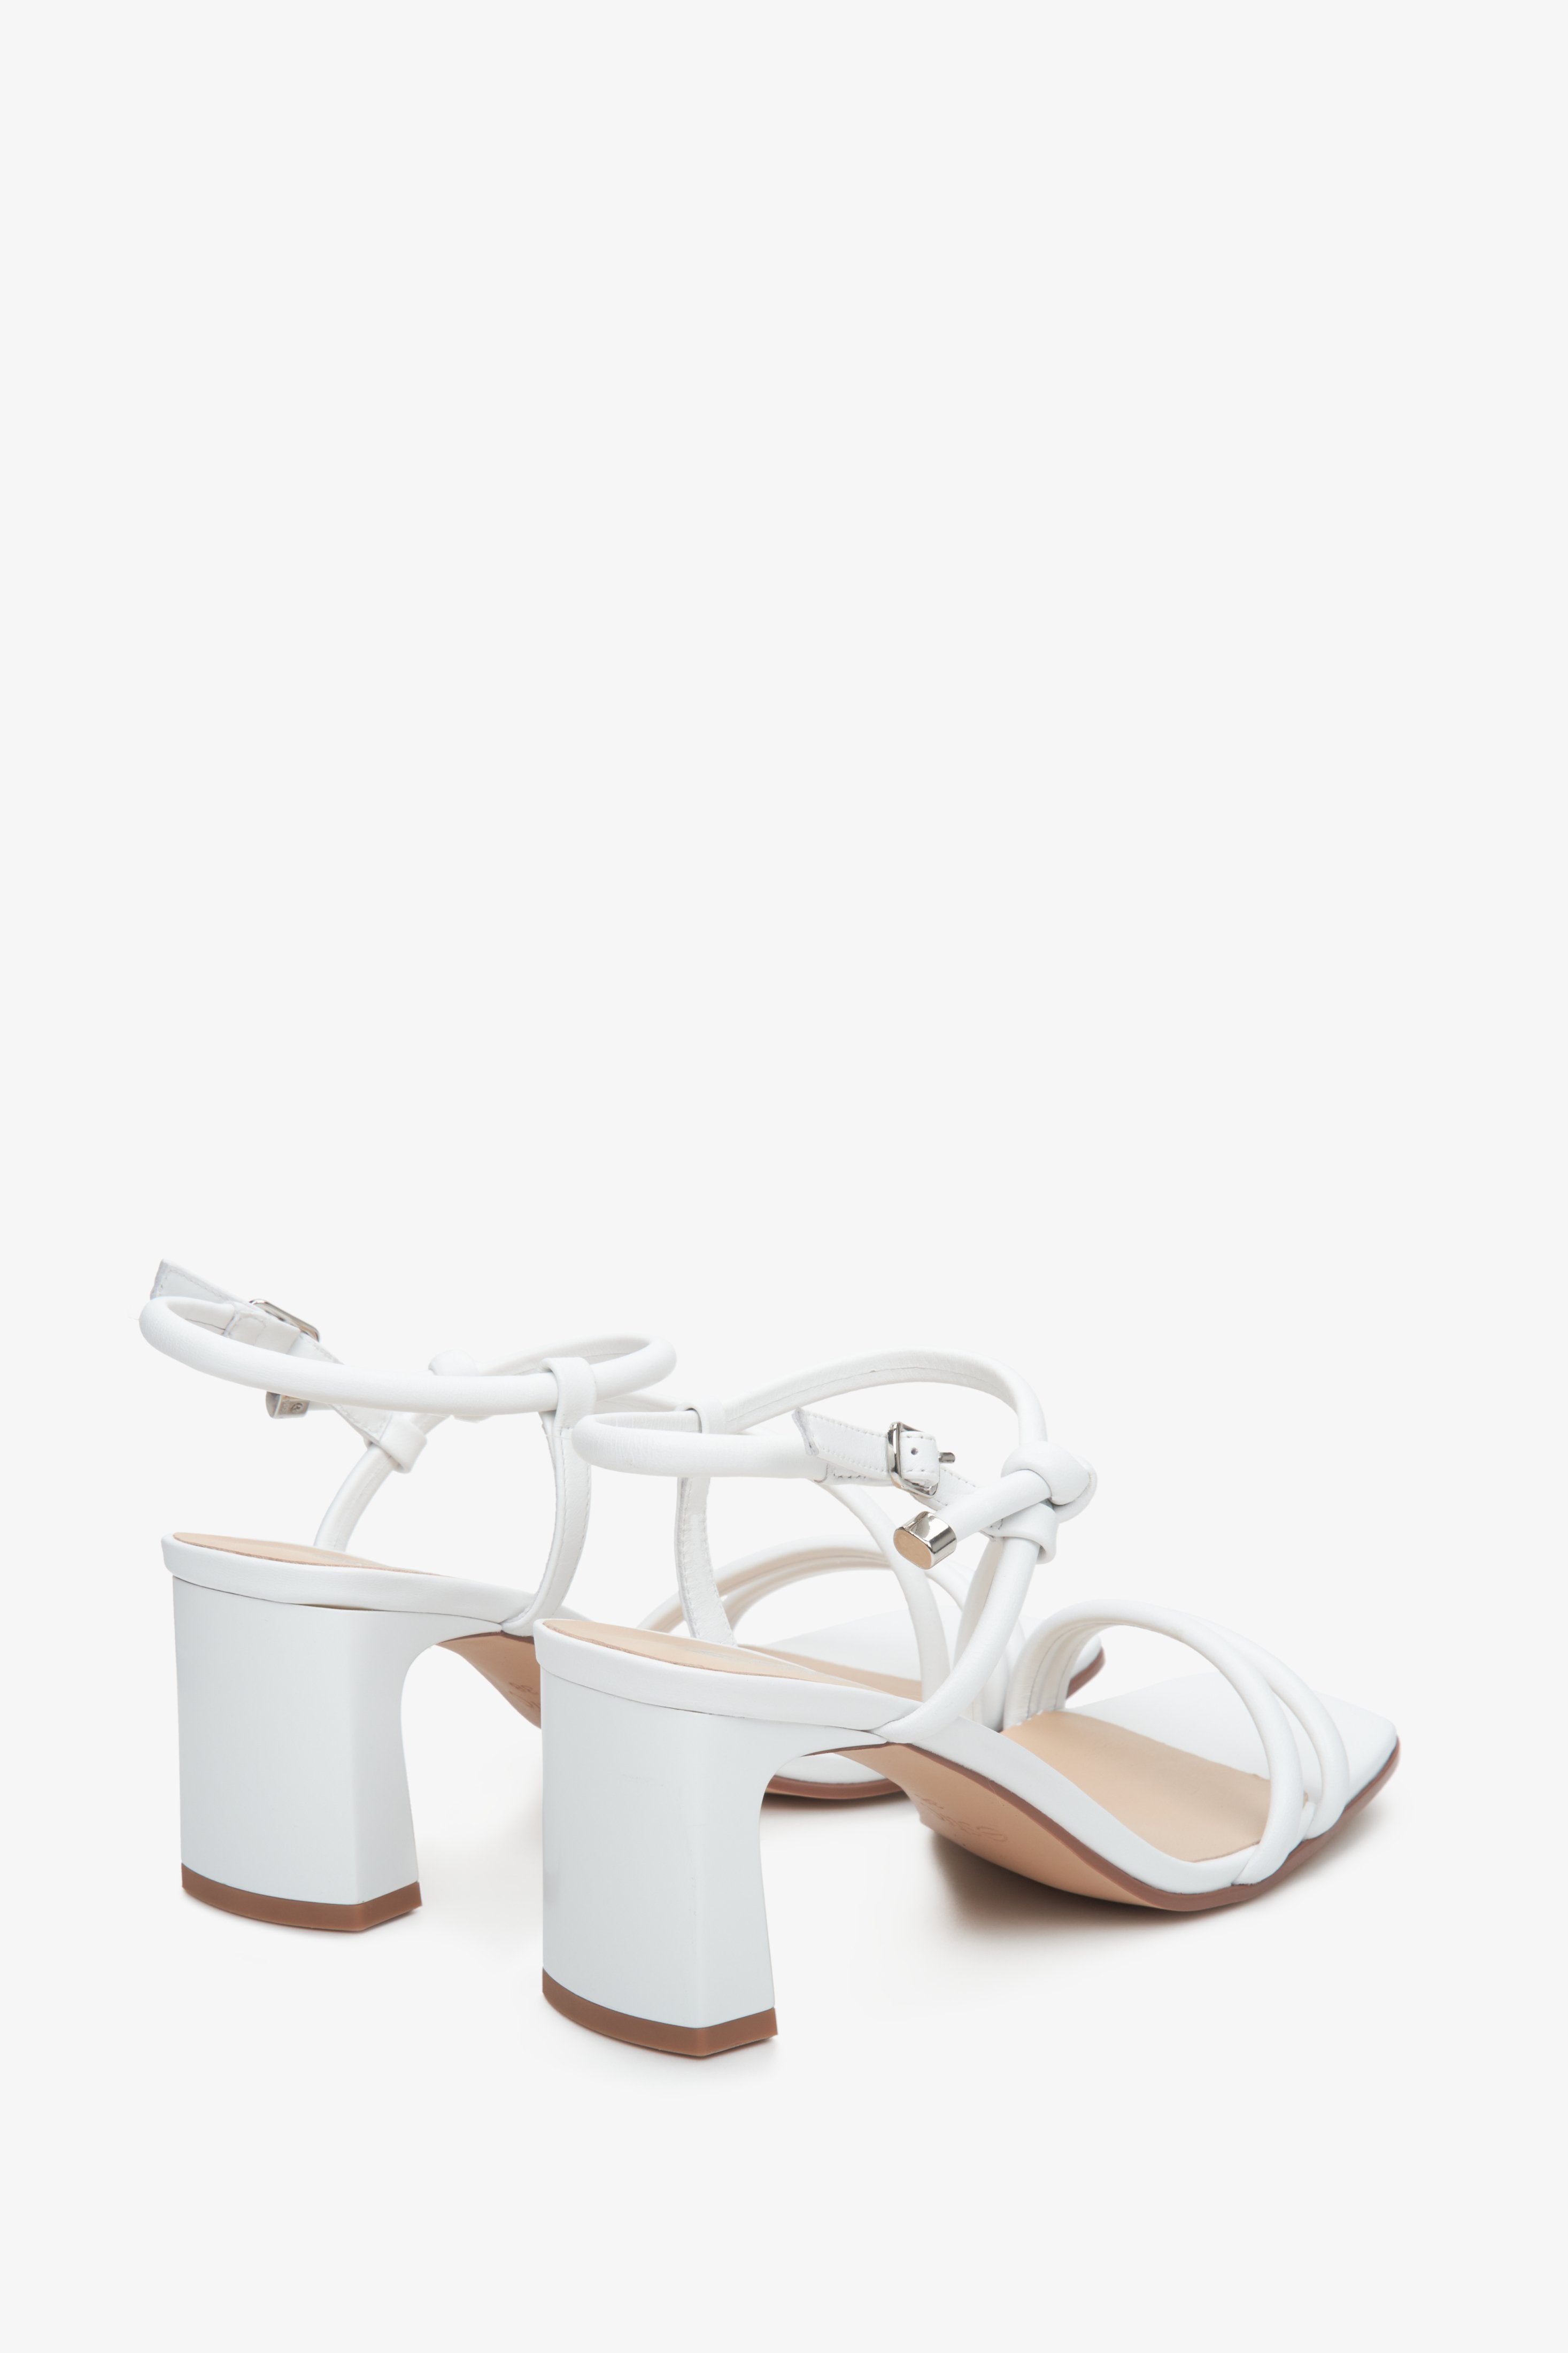 Damskie sandały na obcasie Estro w kolorze białym - prezentacja przyszwy bocznej i tyłu obcasa.